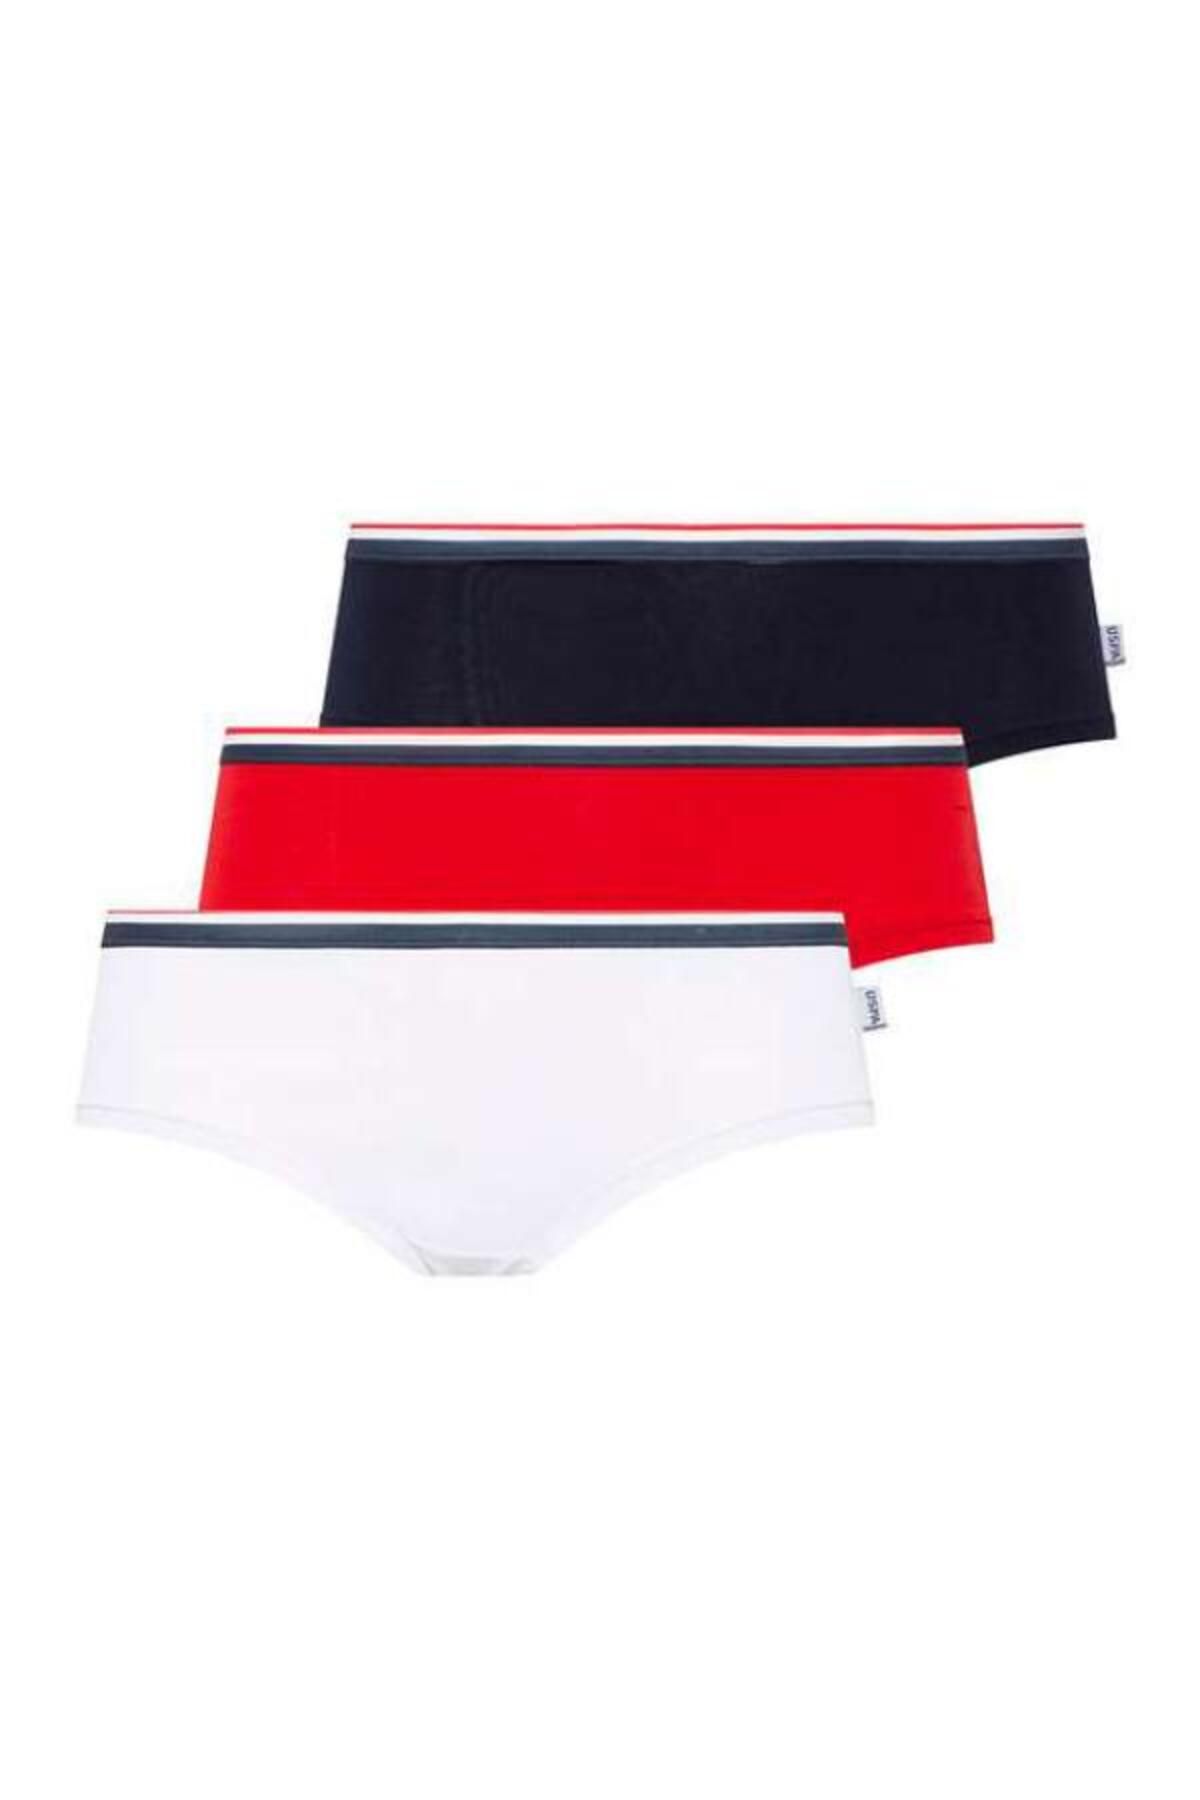 U.S. Polo Assn. U.S. Polo Assn. İç Giyim Kadın Beyaz &Lacivert &Kırmızı 3'lü Takım L.2.0.1.L.0.29